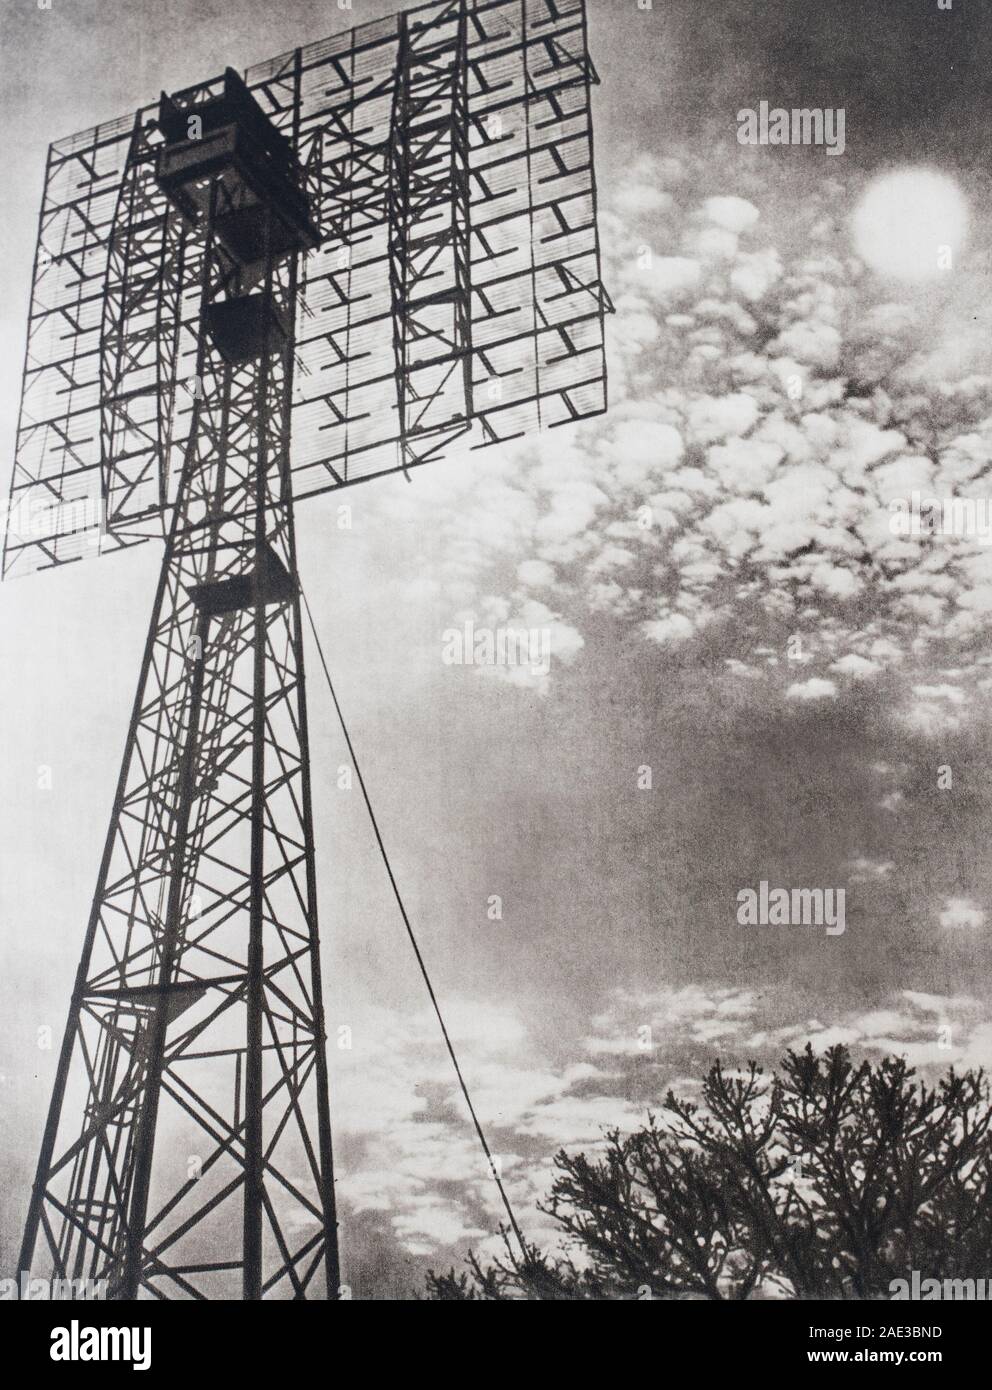 Un tour d'émission radar, la précieuse découverte qui a permis d'assurer la sécurité de l'air et des routes maritimes. Banque D'Images